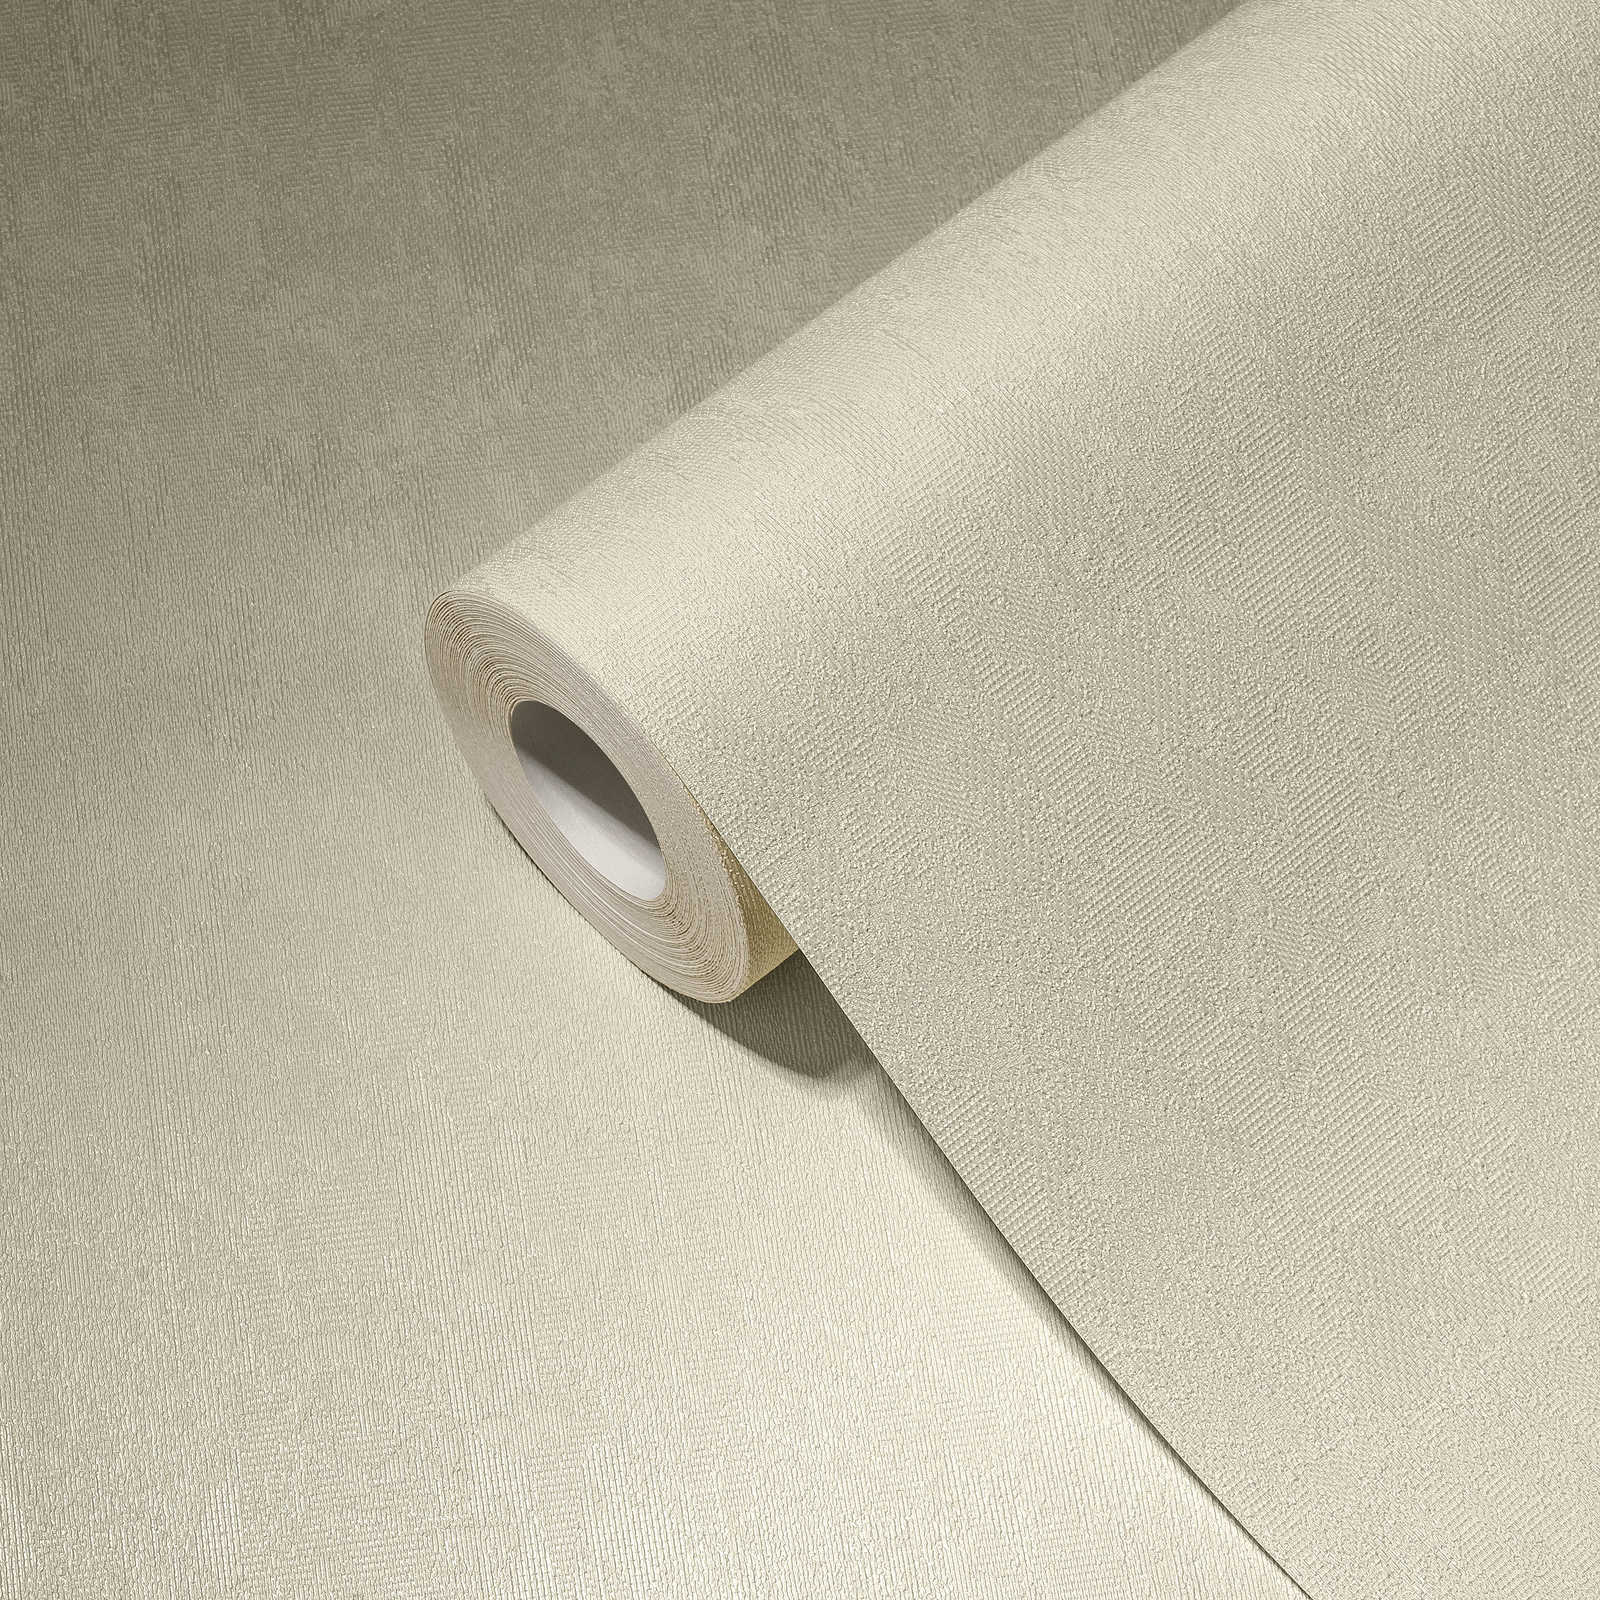             Papier peint intissé crème-blanc uni avec surface structurée
        